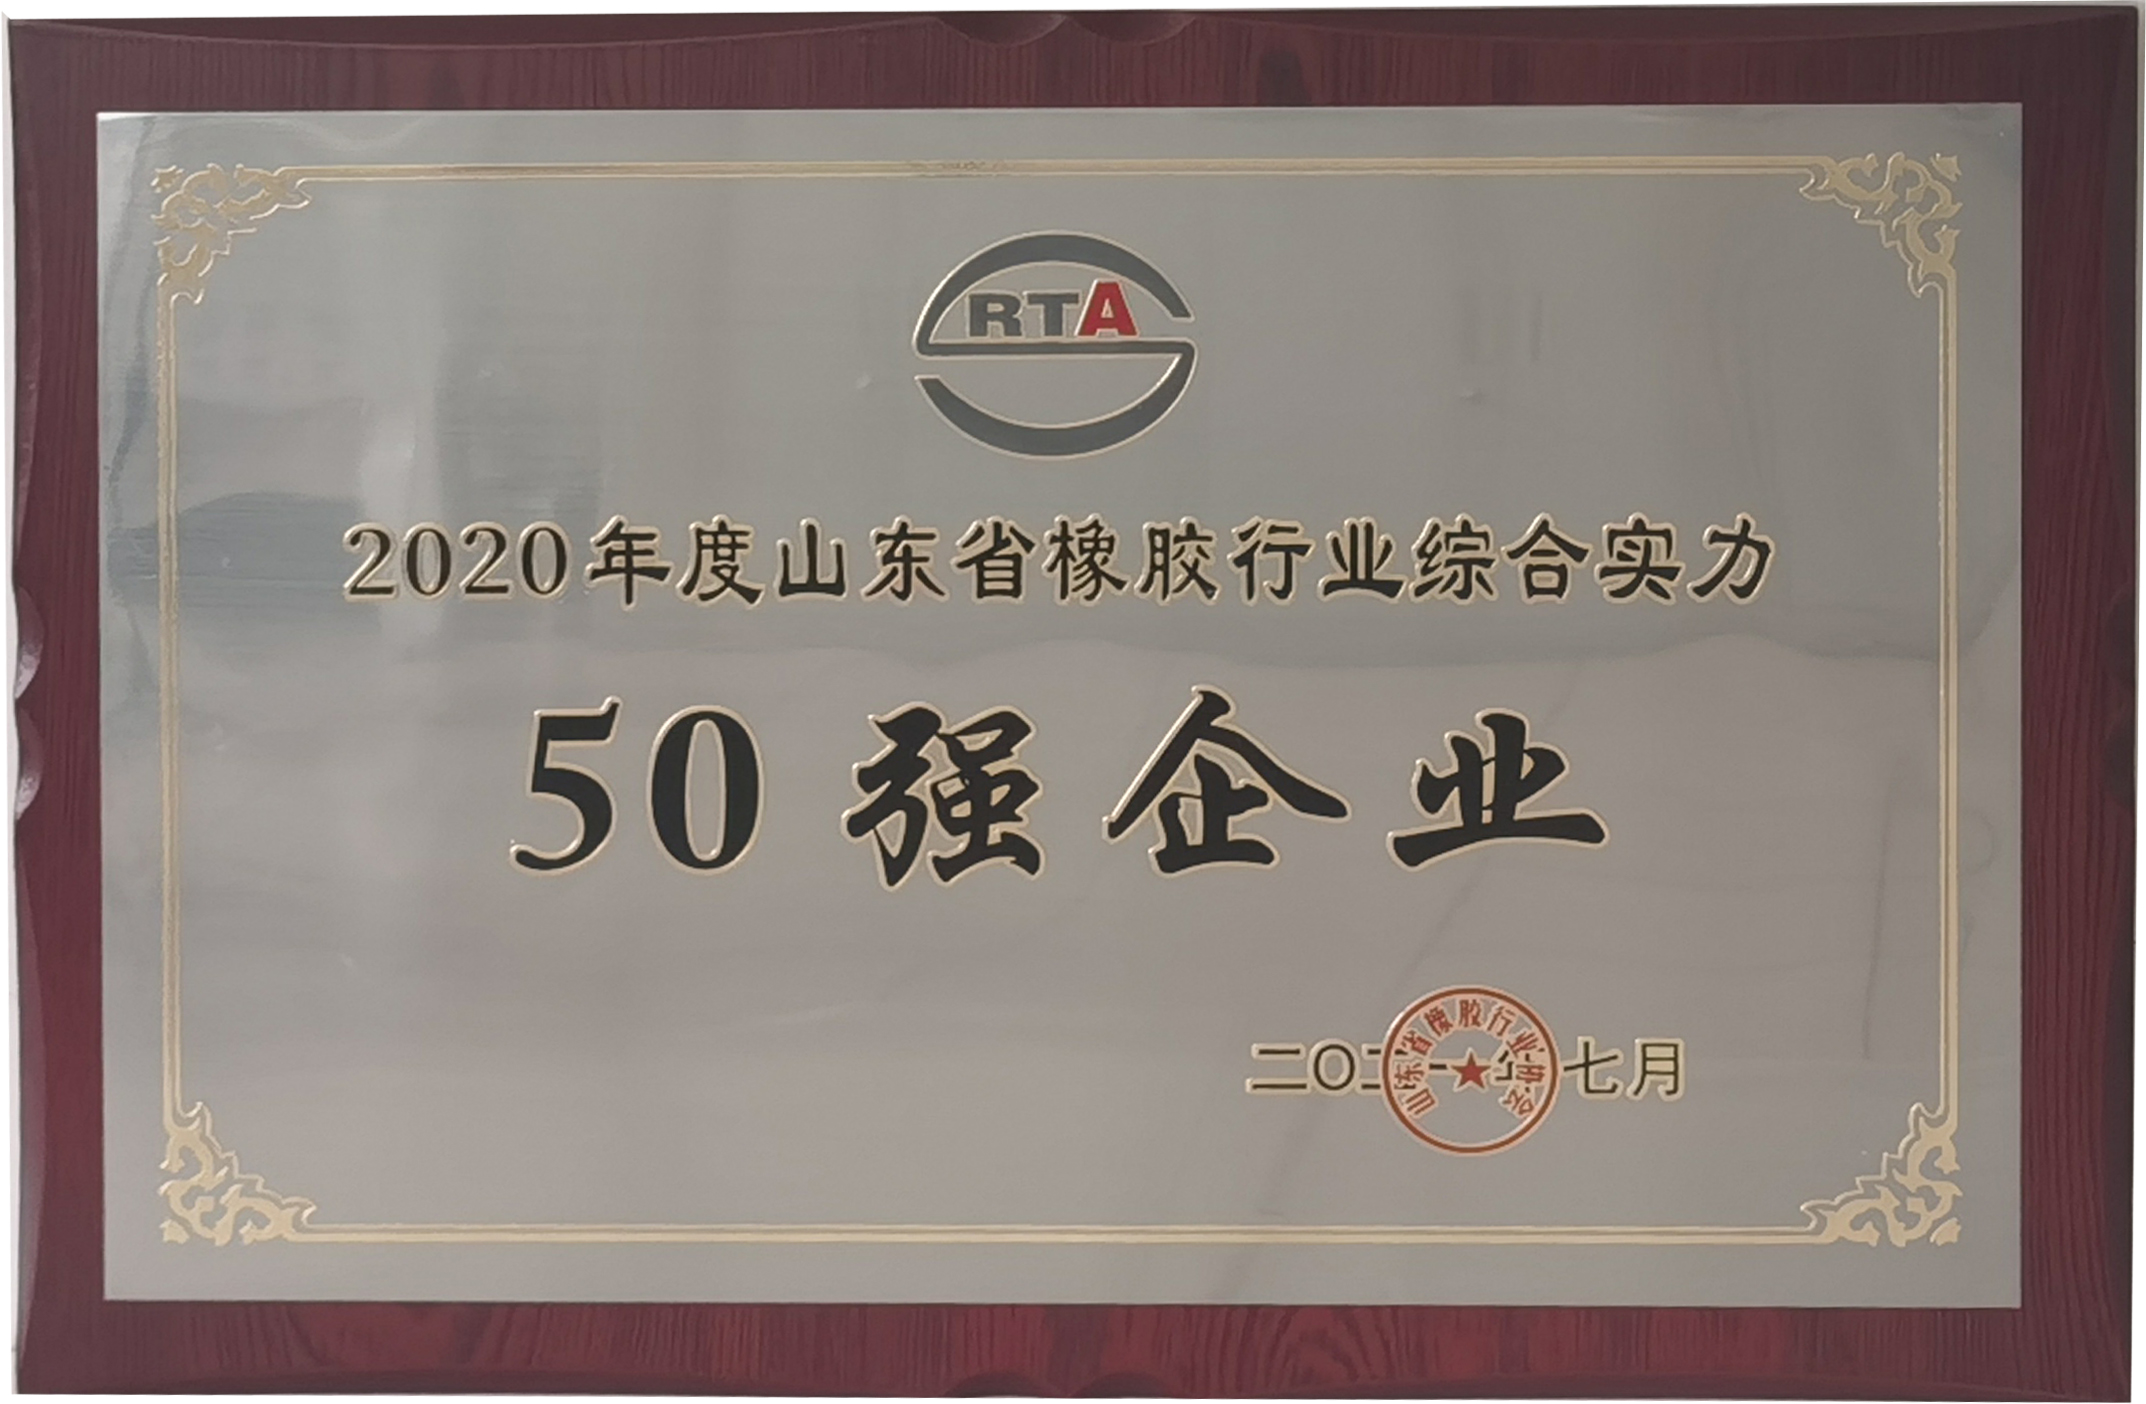 威海中威橡胶有限公司蝉联山东省橡胶行业综合实力50强